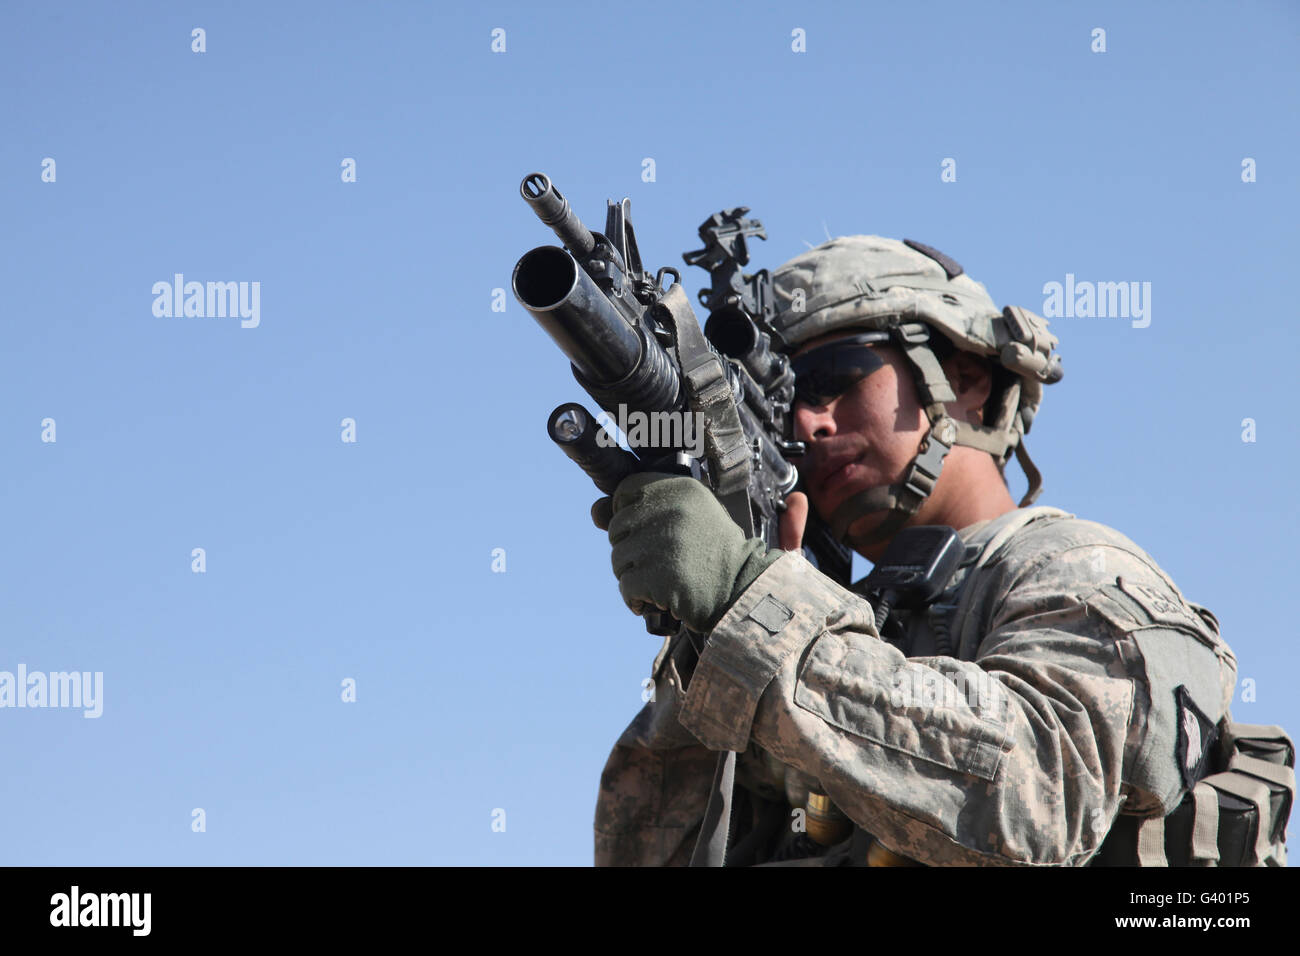 Soldat de l'armée américaine analyse la zone avec un lance-grenades M203. Banque D'Images